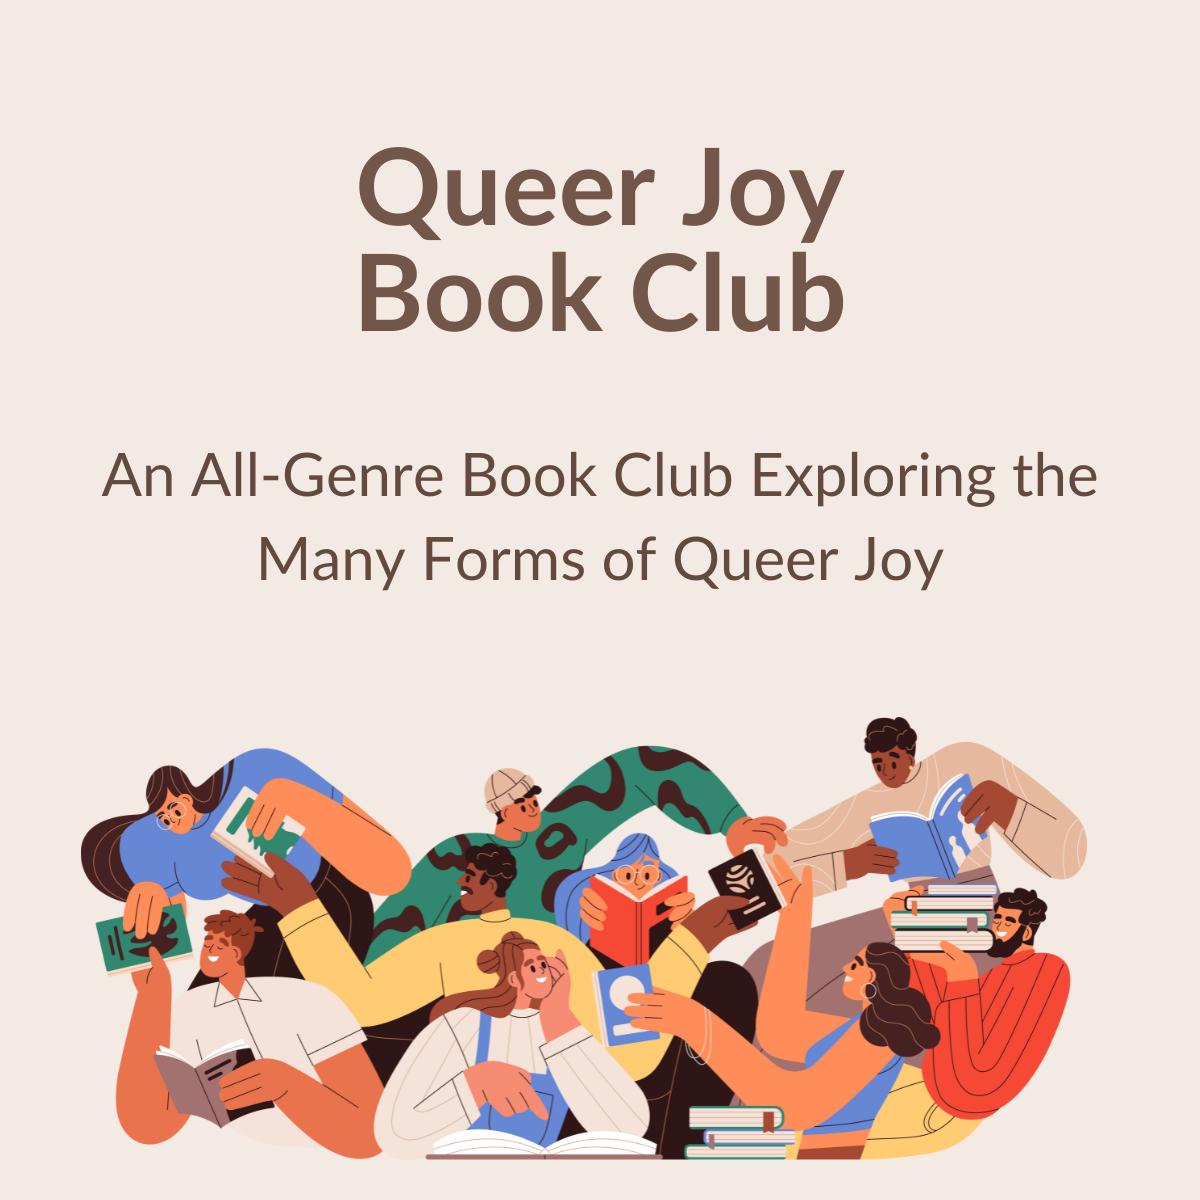 Queer Joy Book Club